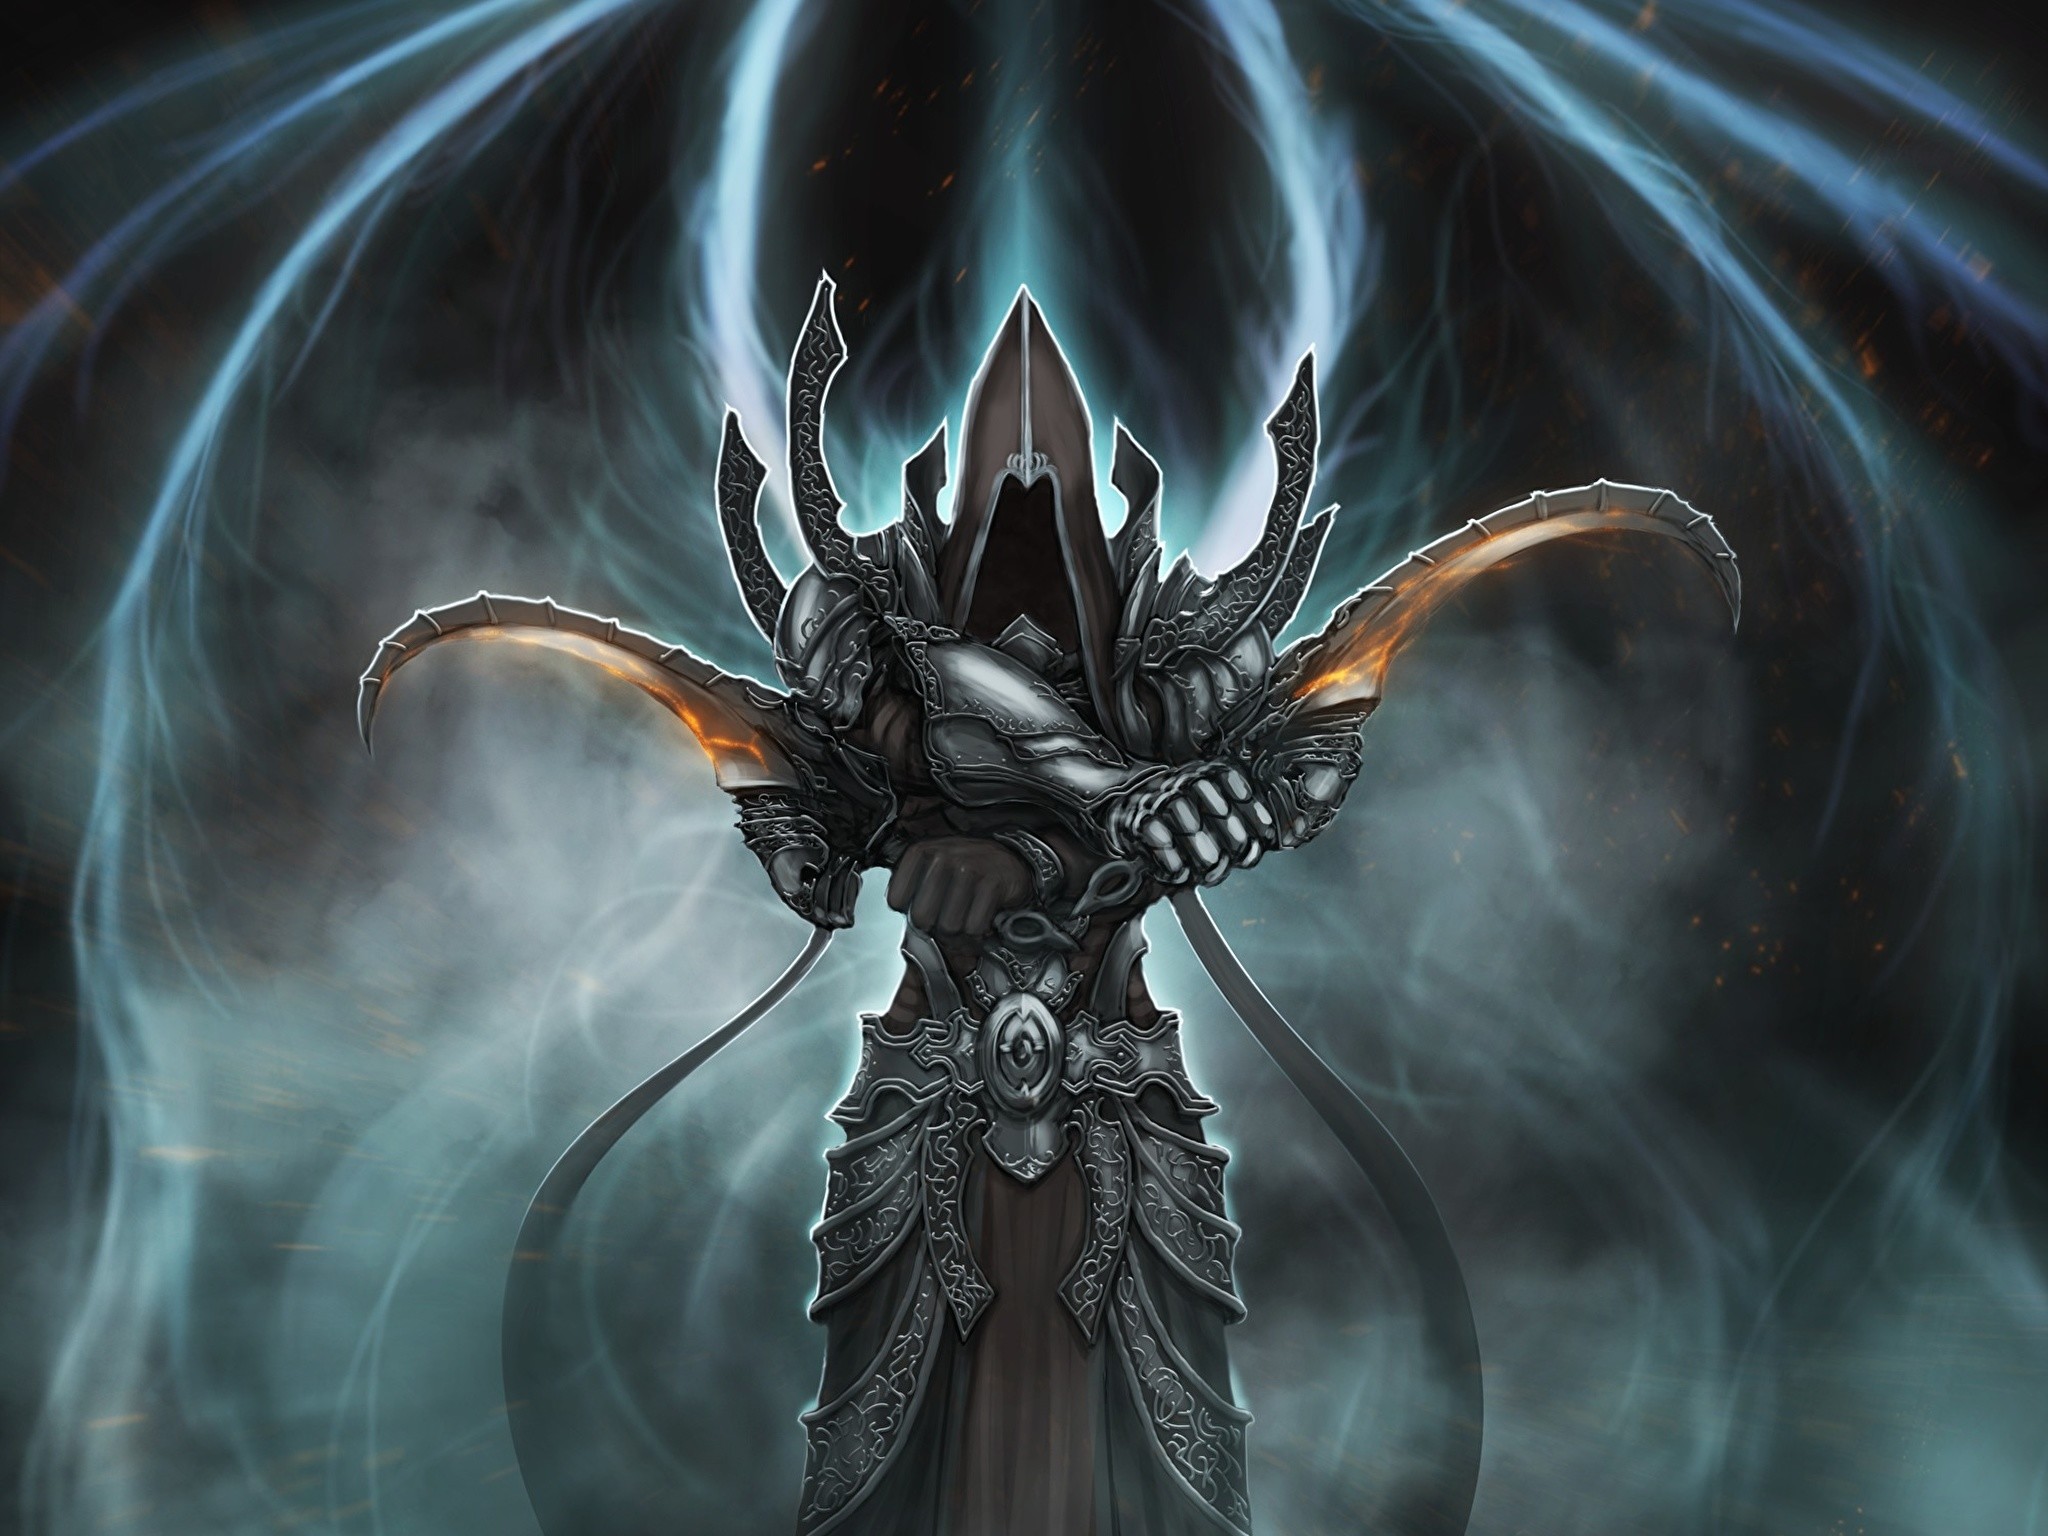 2048x1536 Wallpaper Diablo 3 armour Demons Warriors malthael Reaper of Souls Fantasy  Games Hood headgear  Diablo